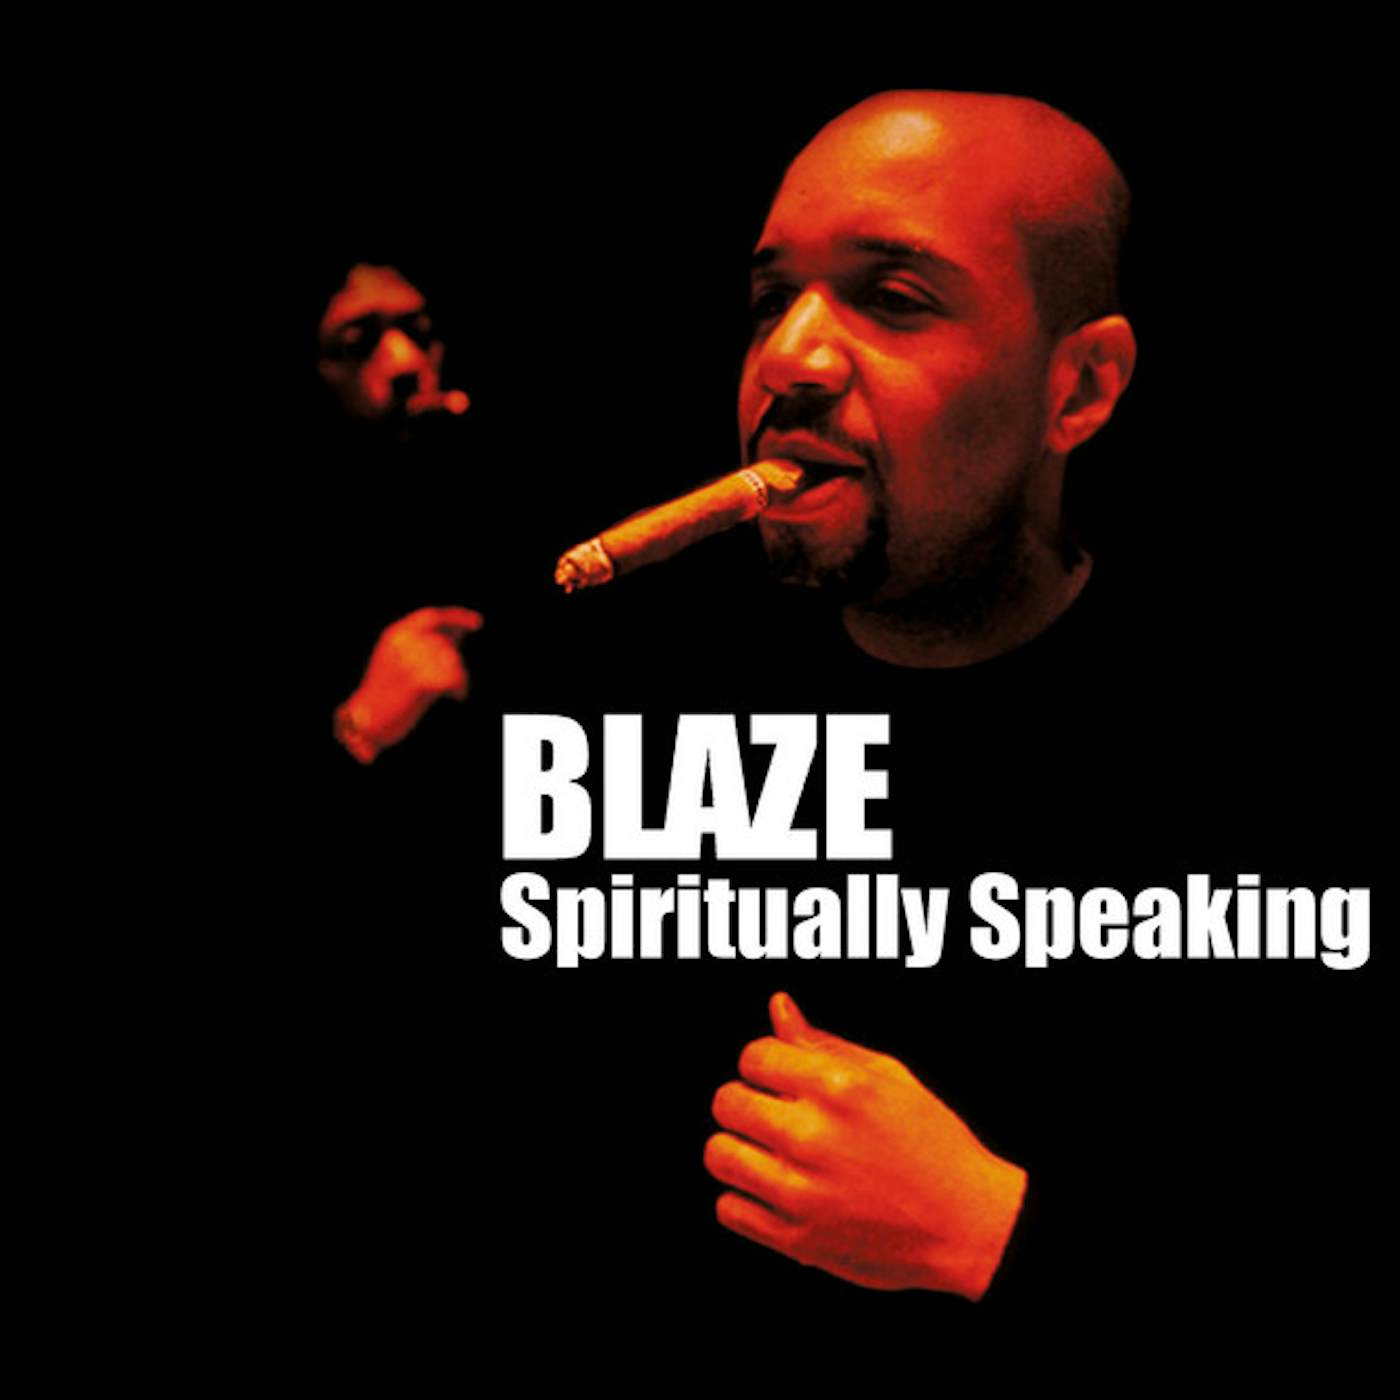 The Blaze SPIRITUALLY SPEAKING CD